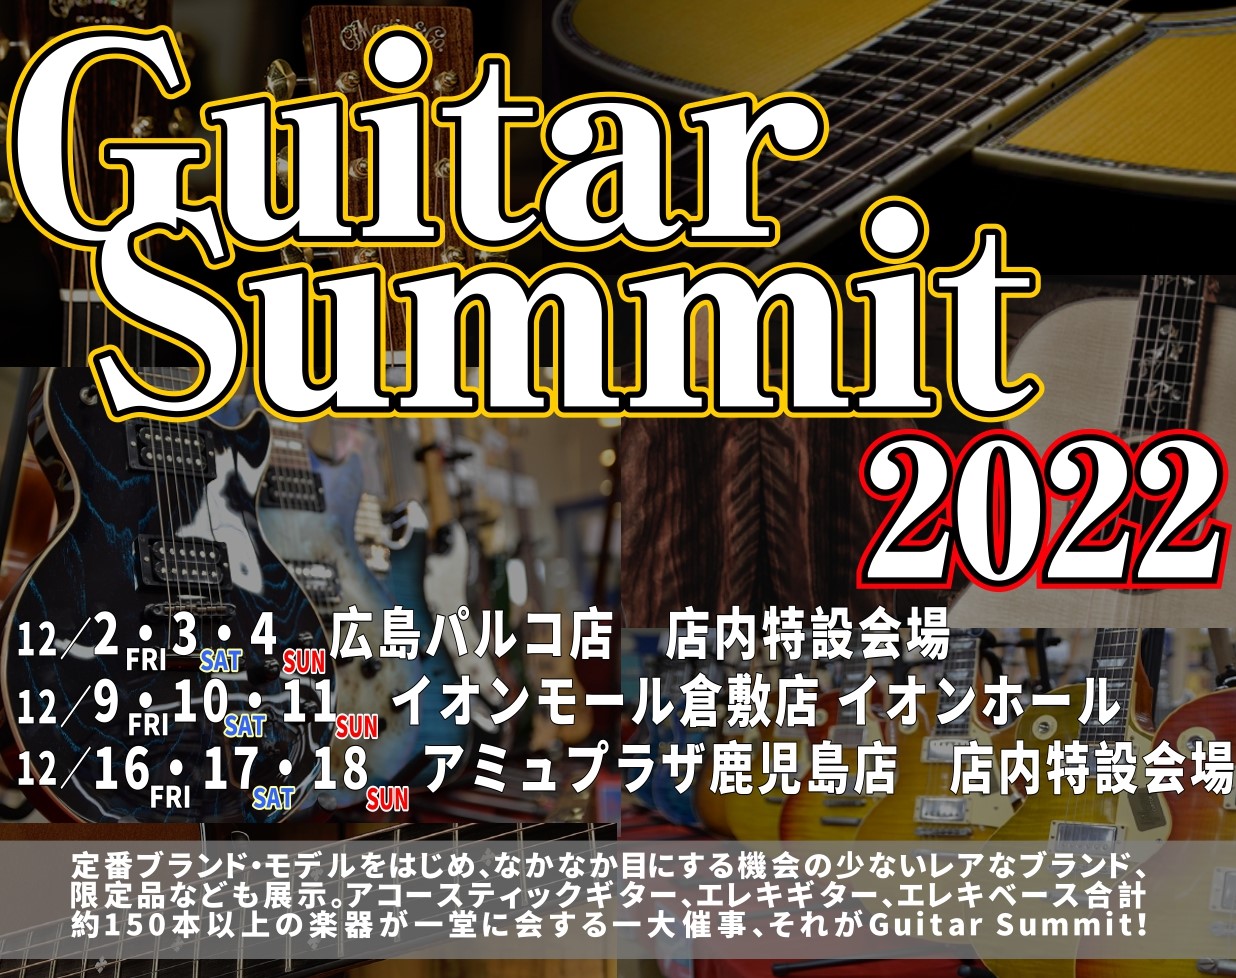 ギターサミット2022 エレキギター展示予定商品のご紹介 前回のアコースティックギターの紹介に続き本日はエレキギターのご紹介です。海外製のギターから国産のハイエンドギターまで幅広く展示予定です。すべてのギターが試奏可能ですのでぜひこの機会にご来場くださいませ！ 展示予定商品は前会場で売れてしまう場合 […]